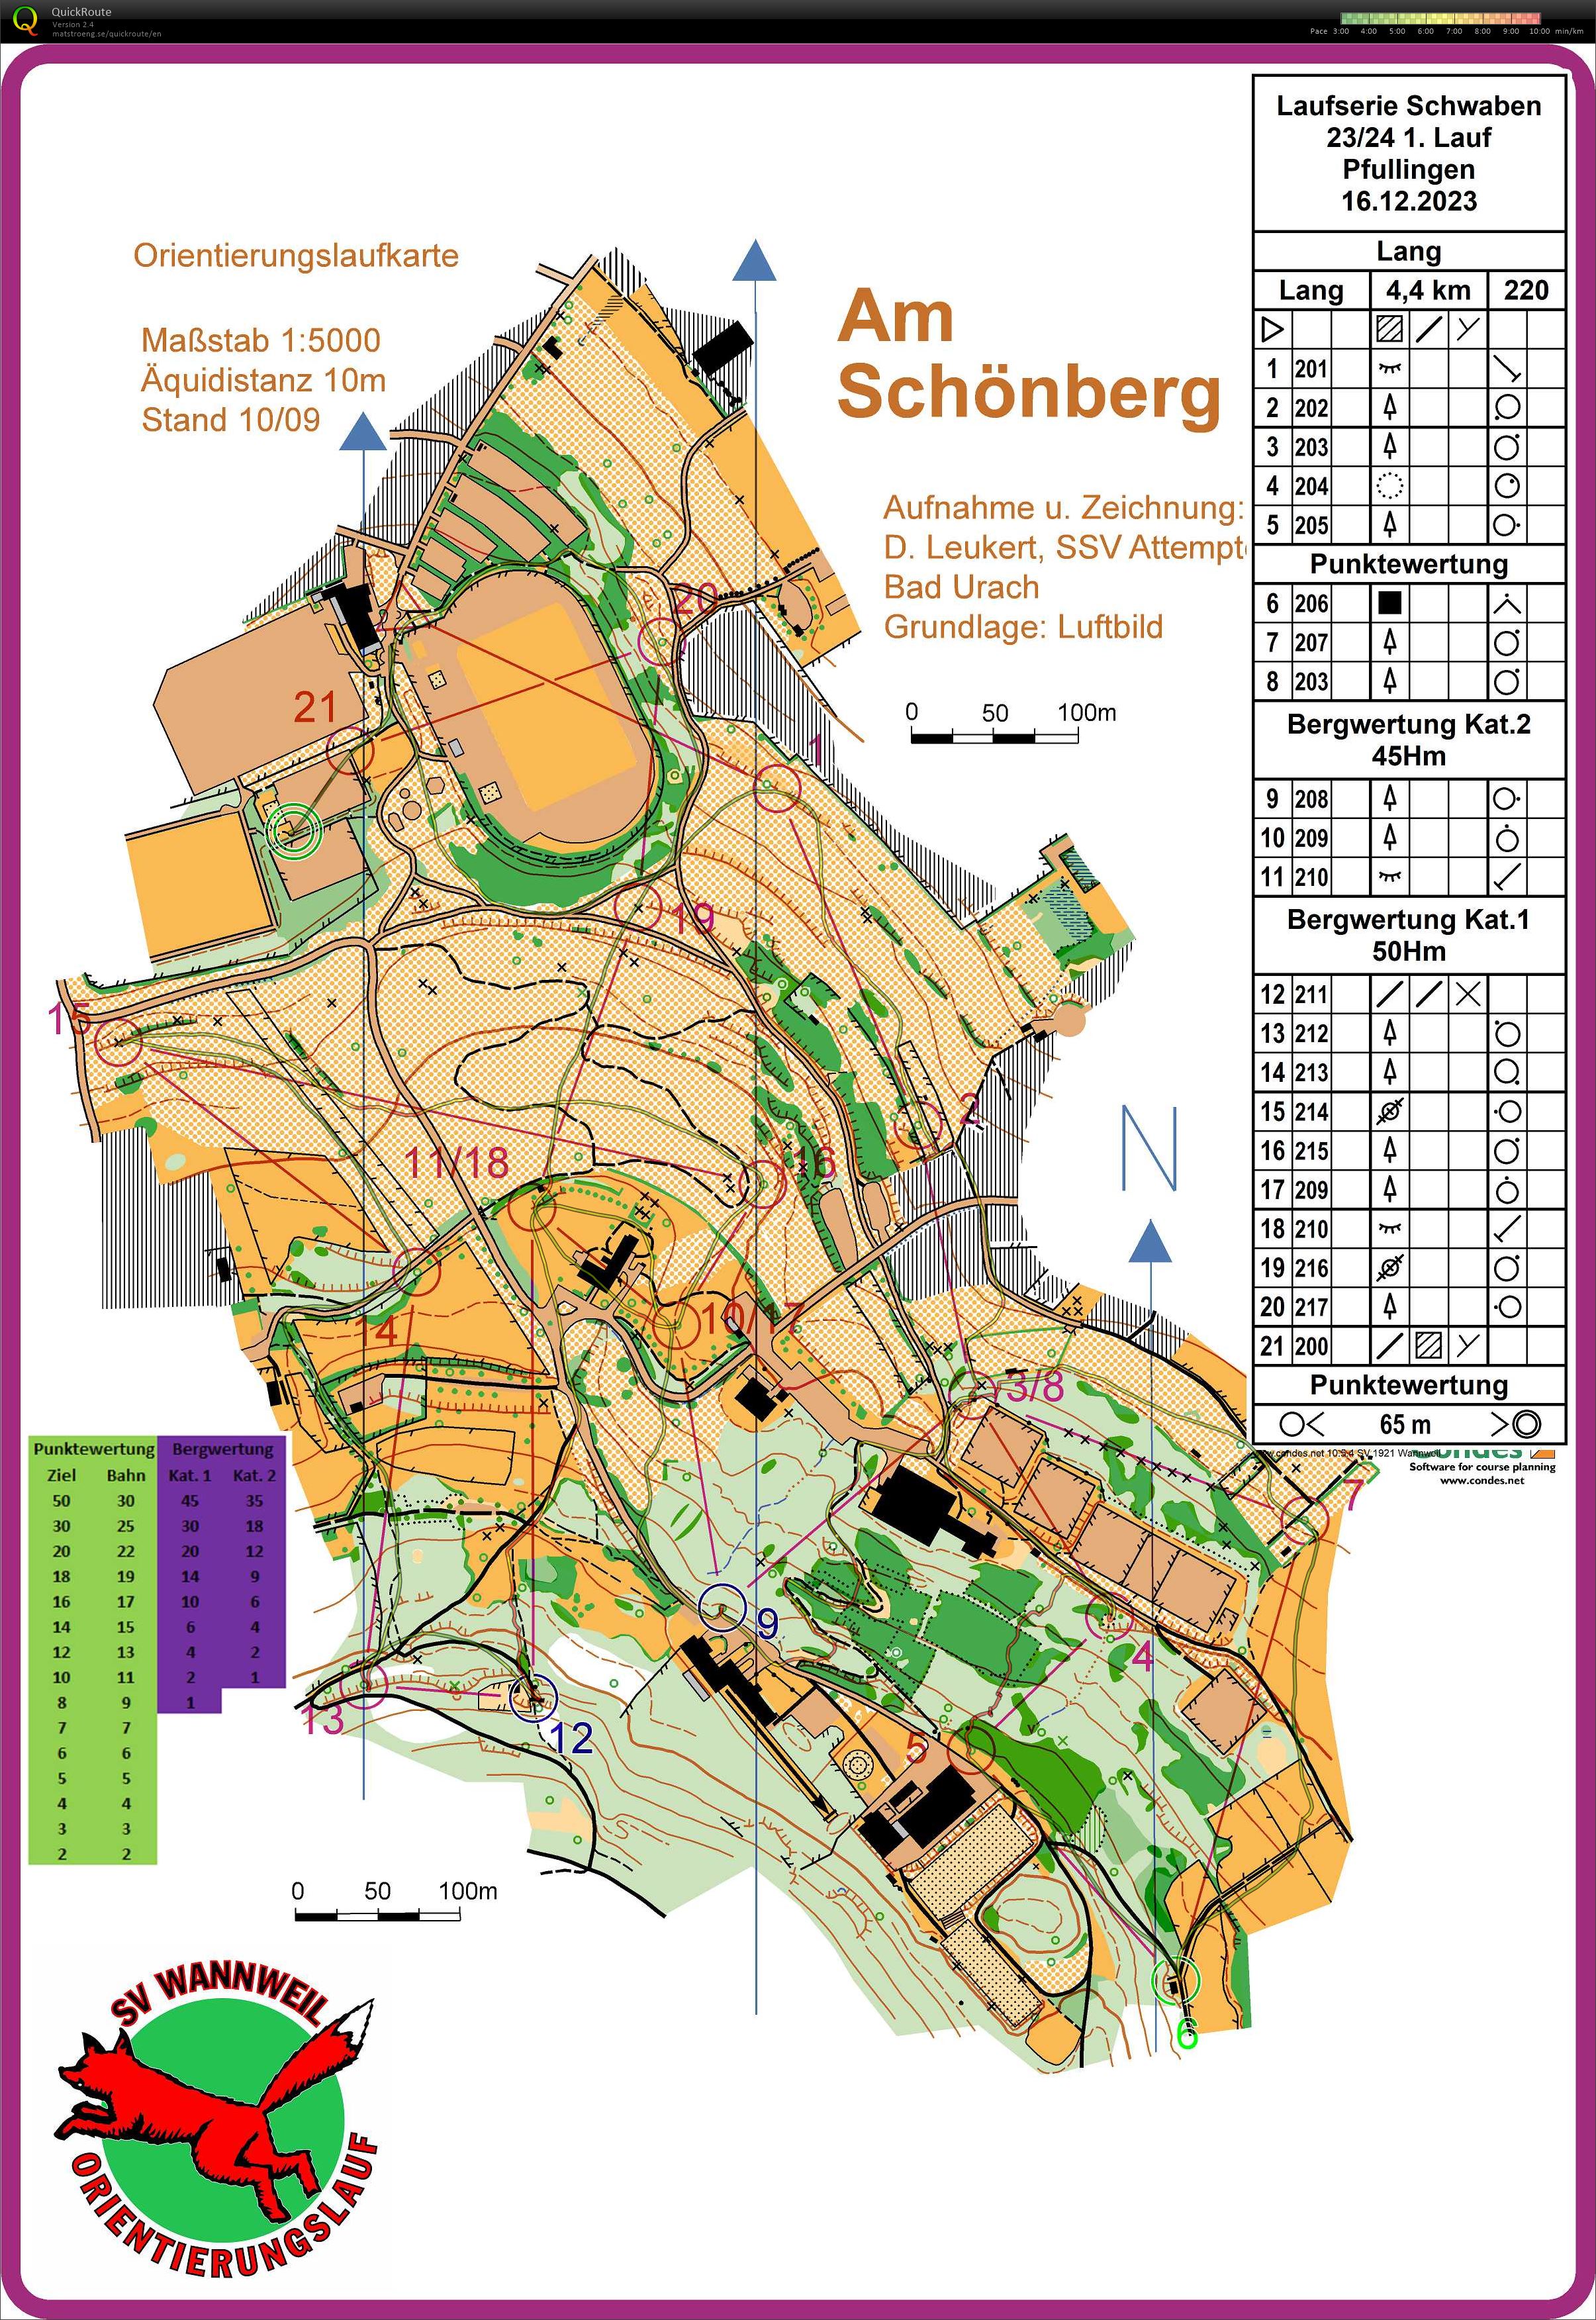 Laufserie Schwaben 23/24 1. Round Pfullingen (16/12/2023)